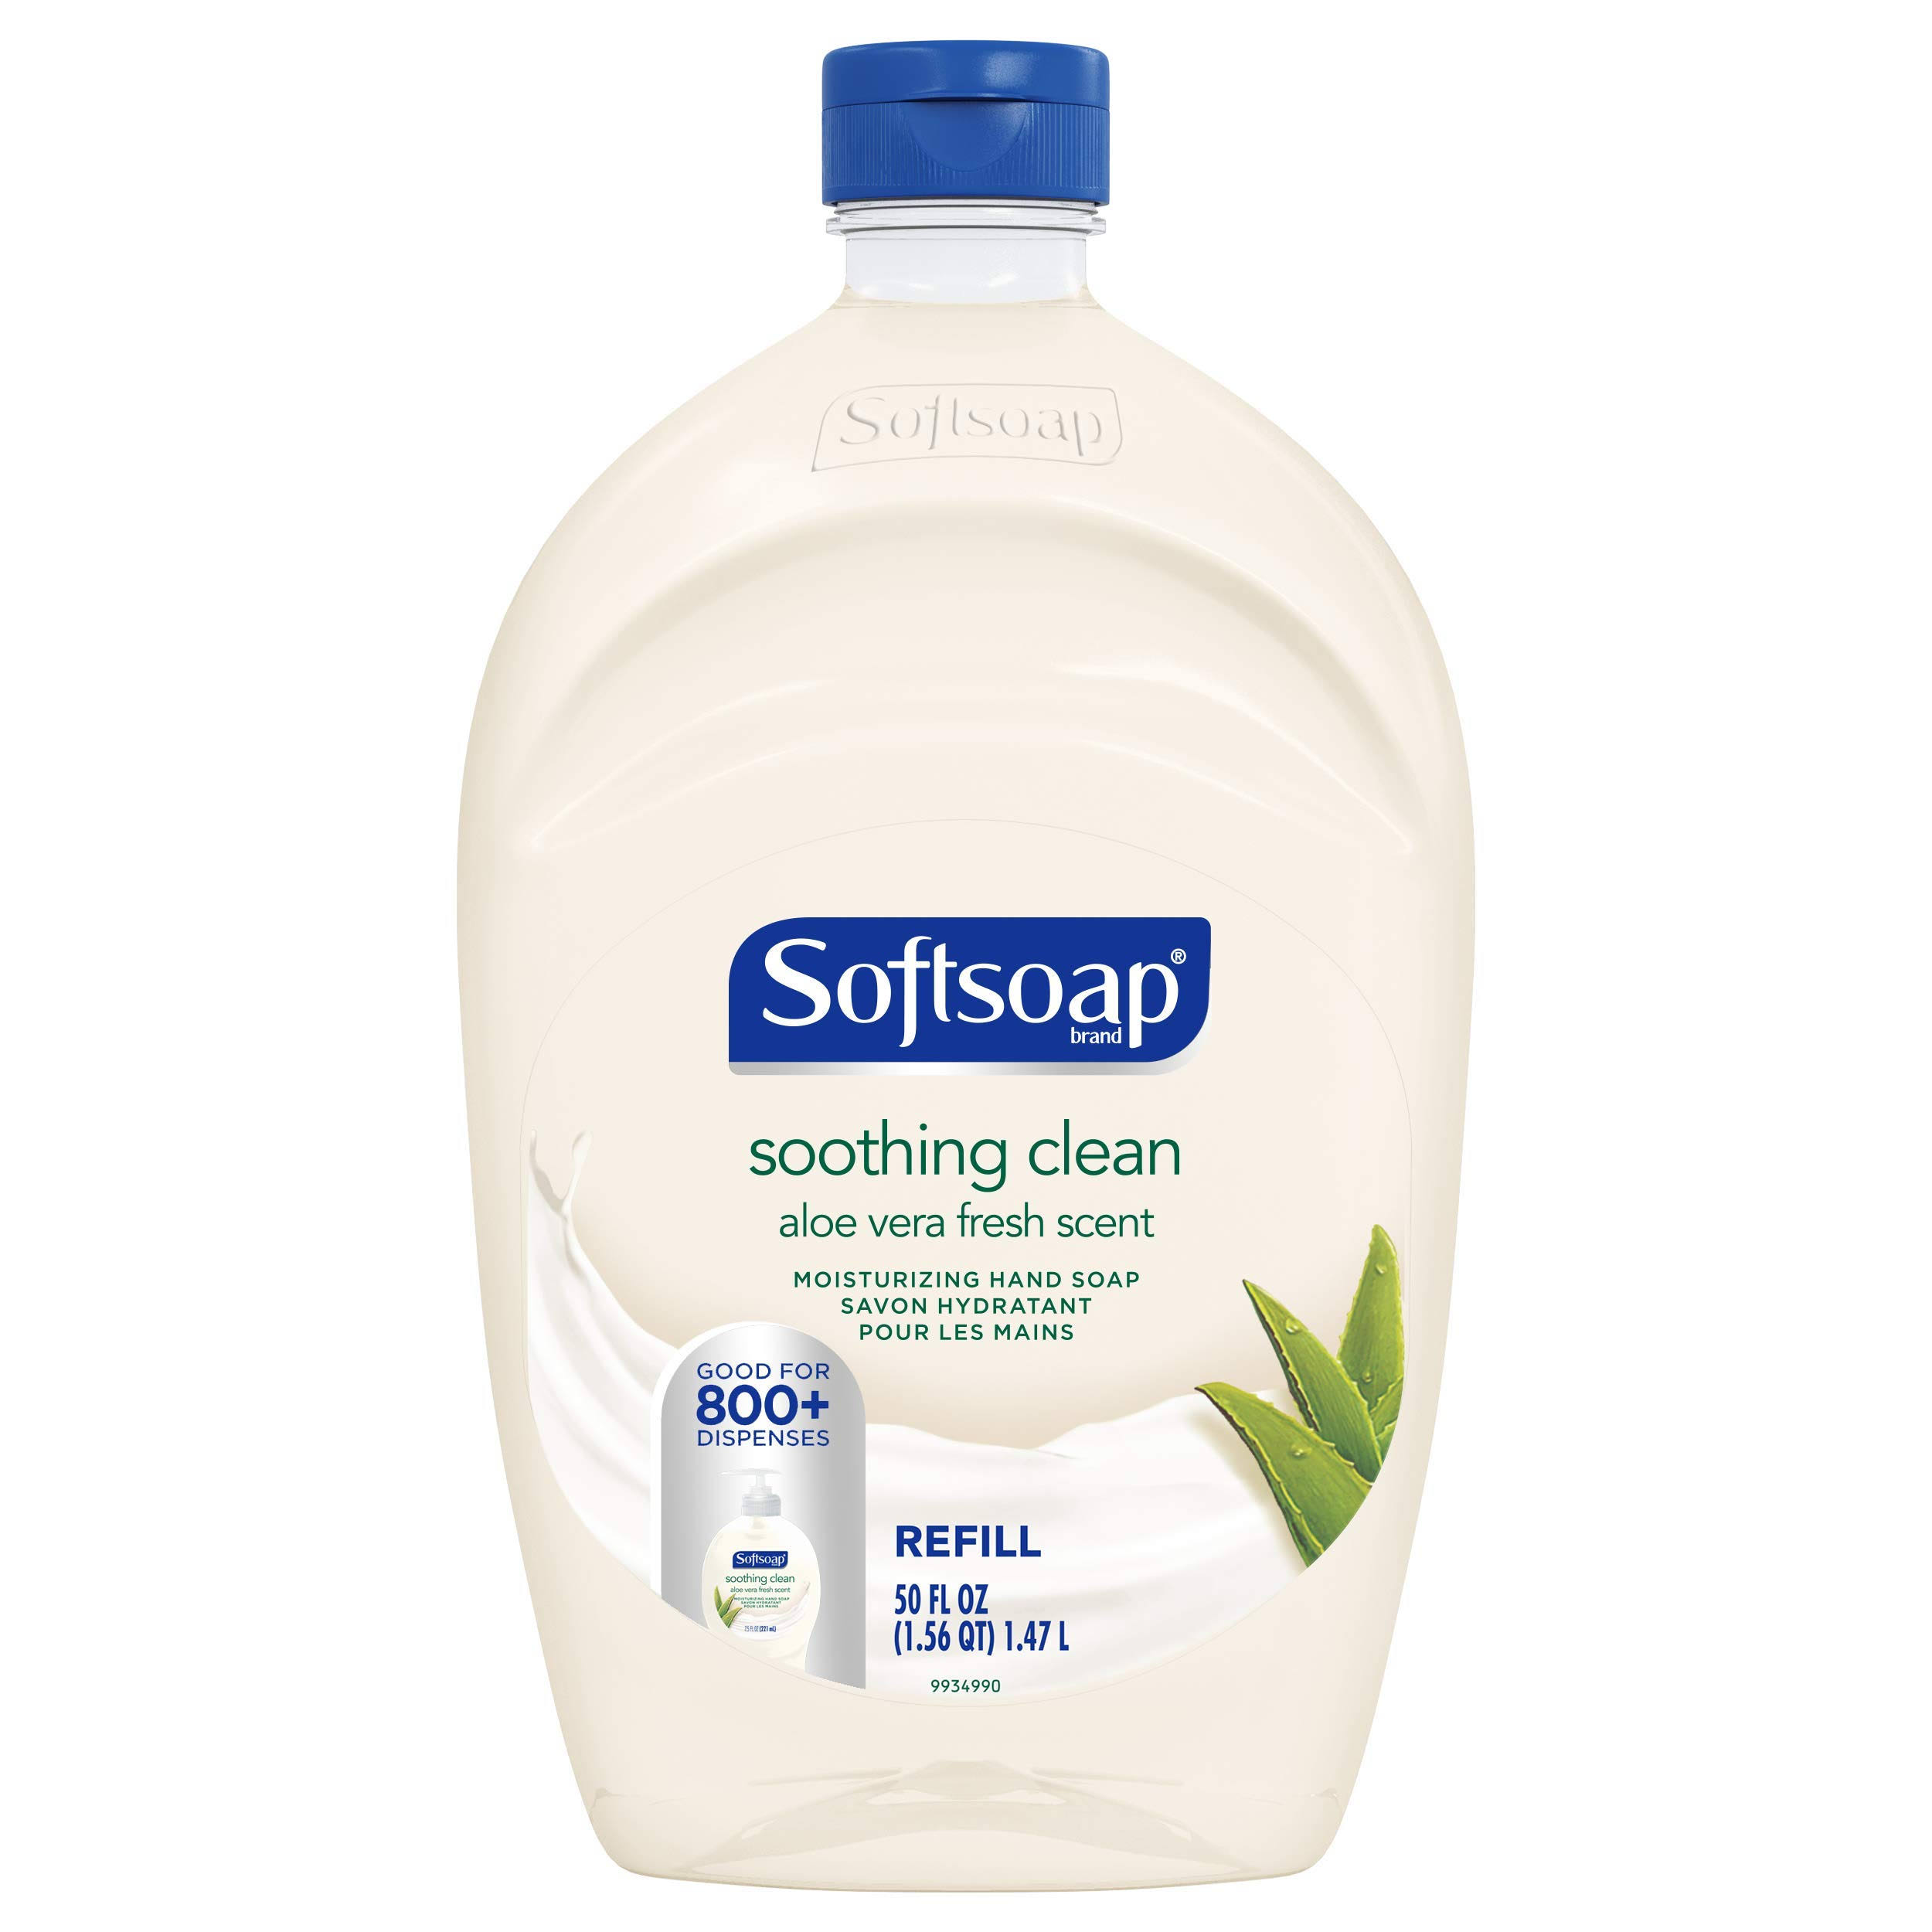 Softsoap Hand Soap, Moisturizing, Aloe Vera Fresh Scent, Refill - 50 fl oz